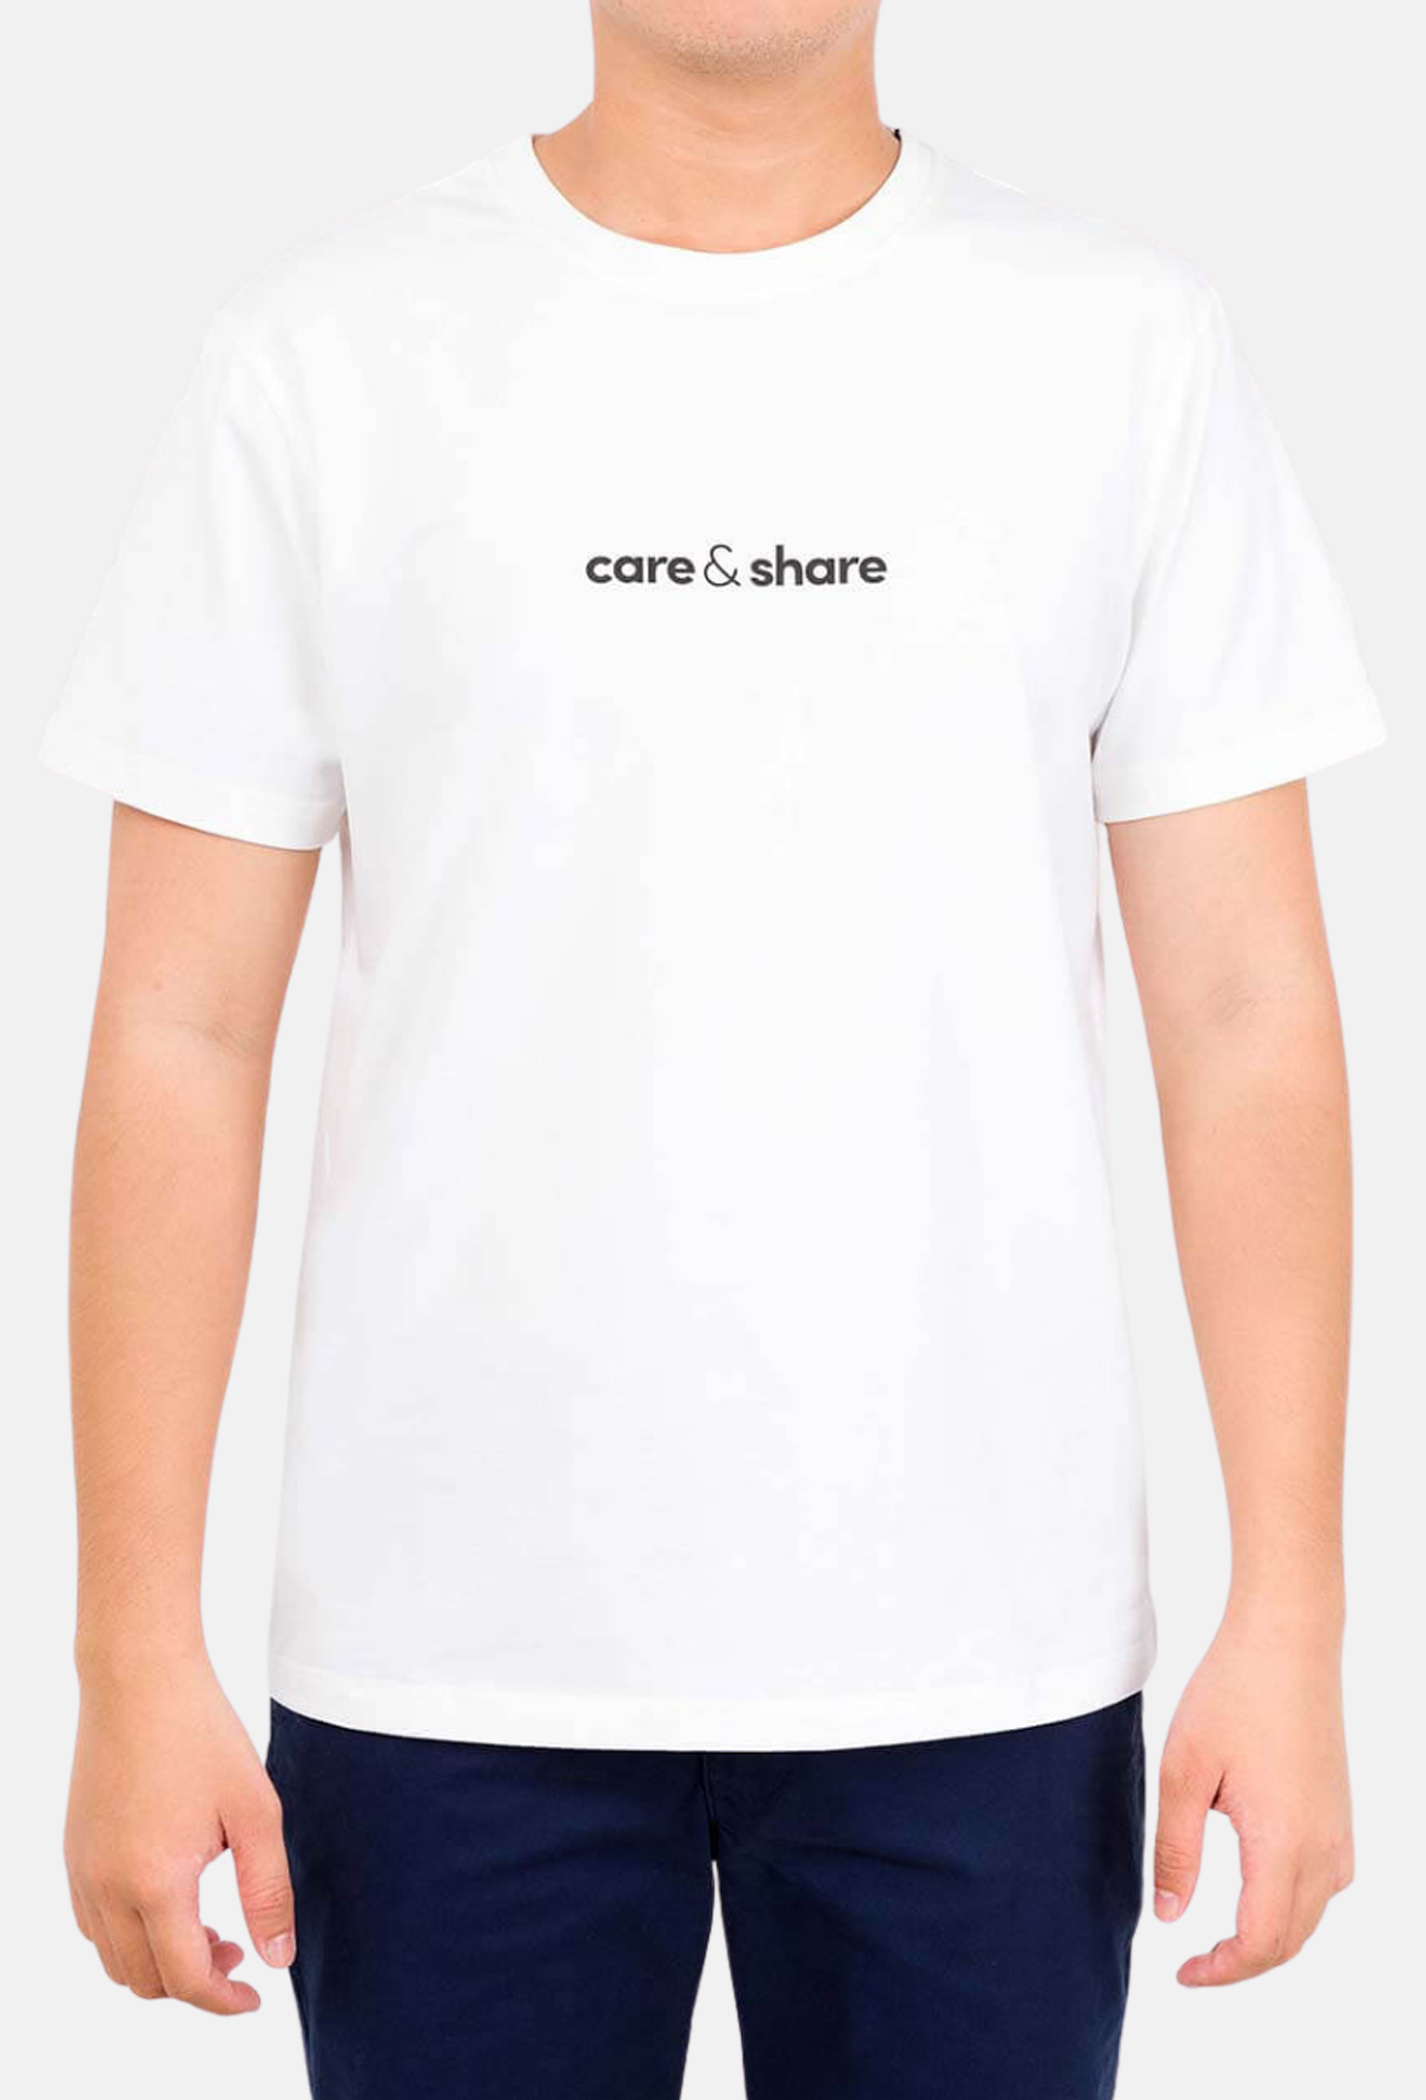 Deal - Áo thun nam Cotton Compact phiên bản Premium in Care & Share giữa áo màu trắng chỉ 99K  1